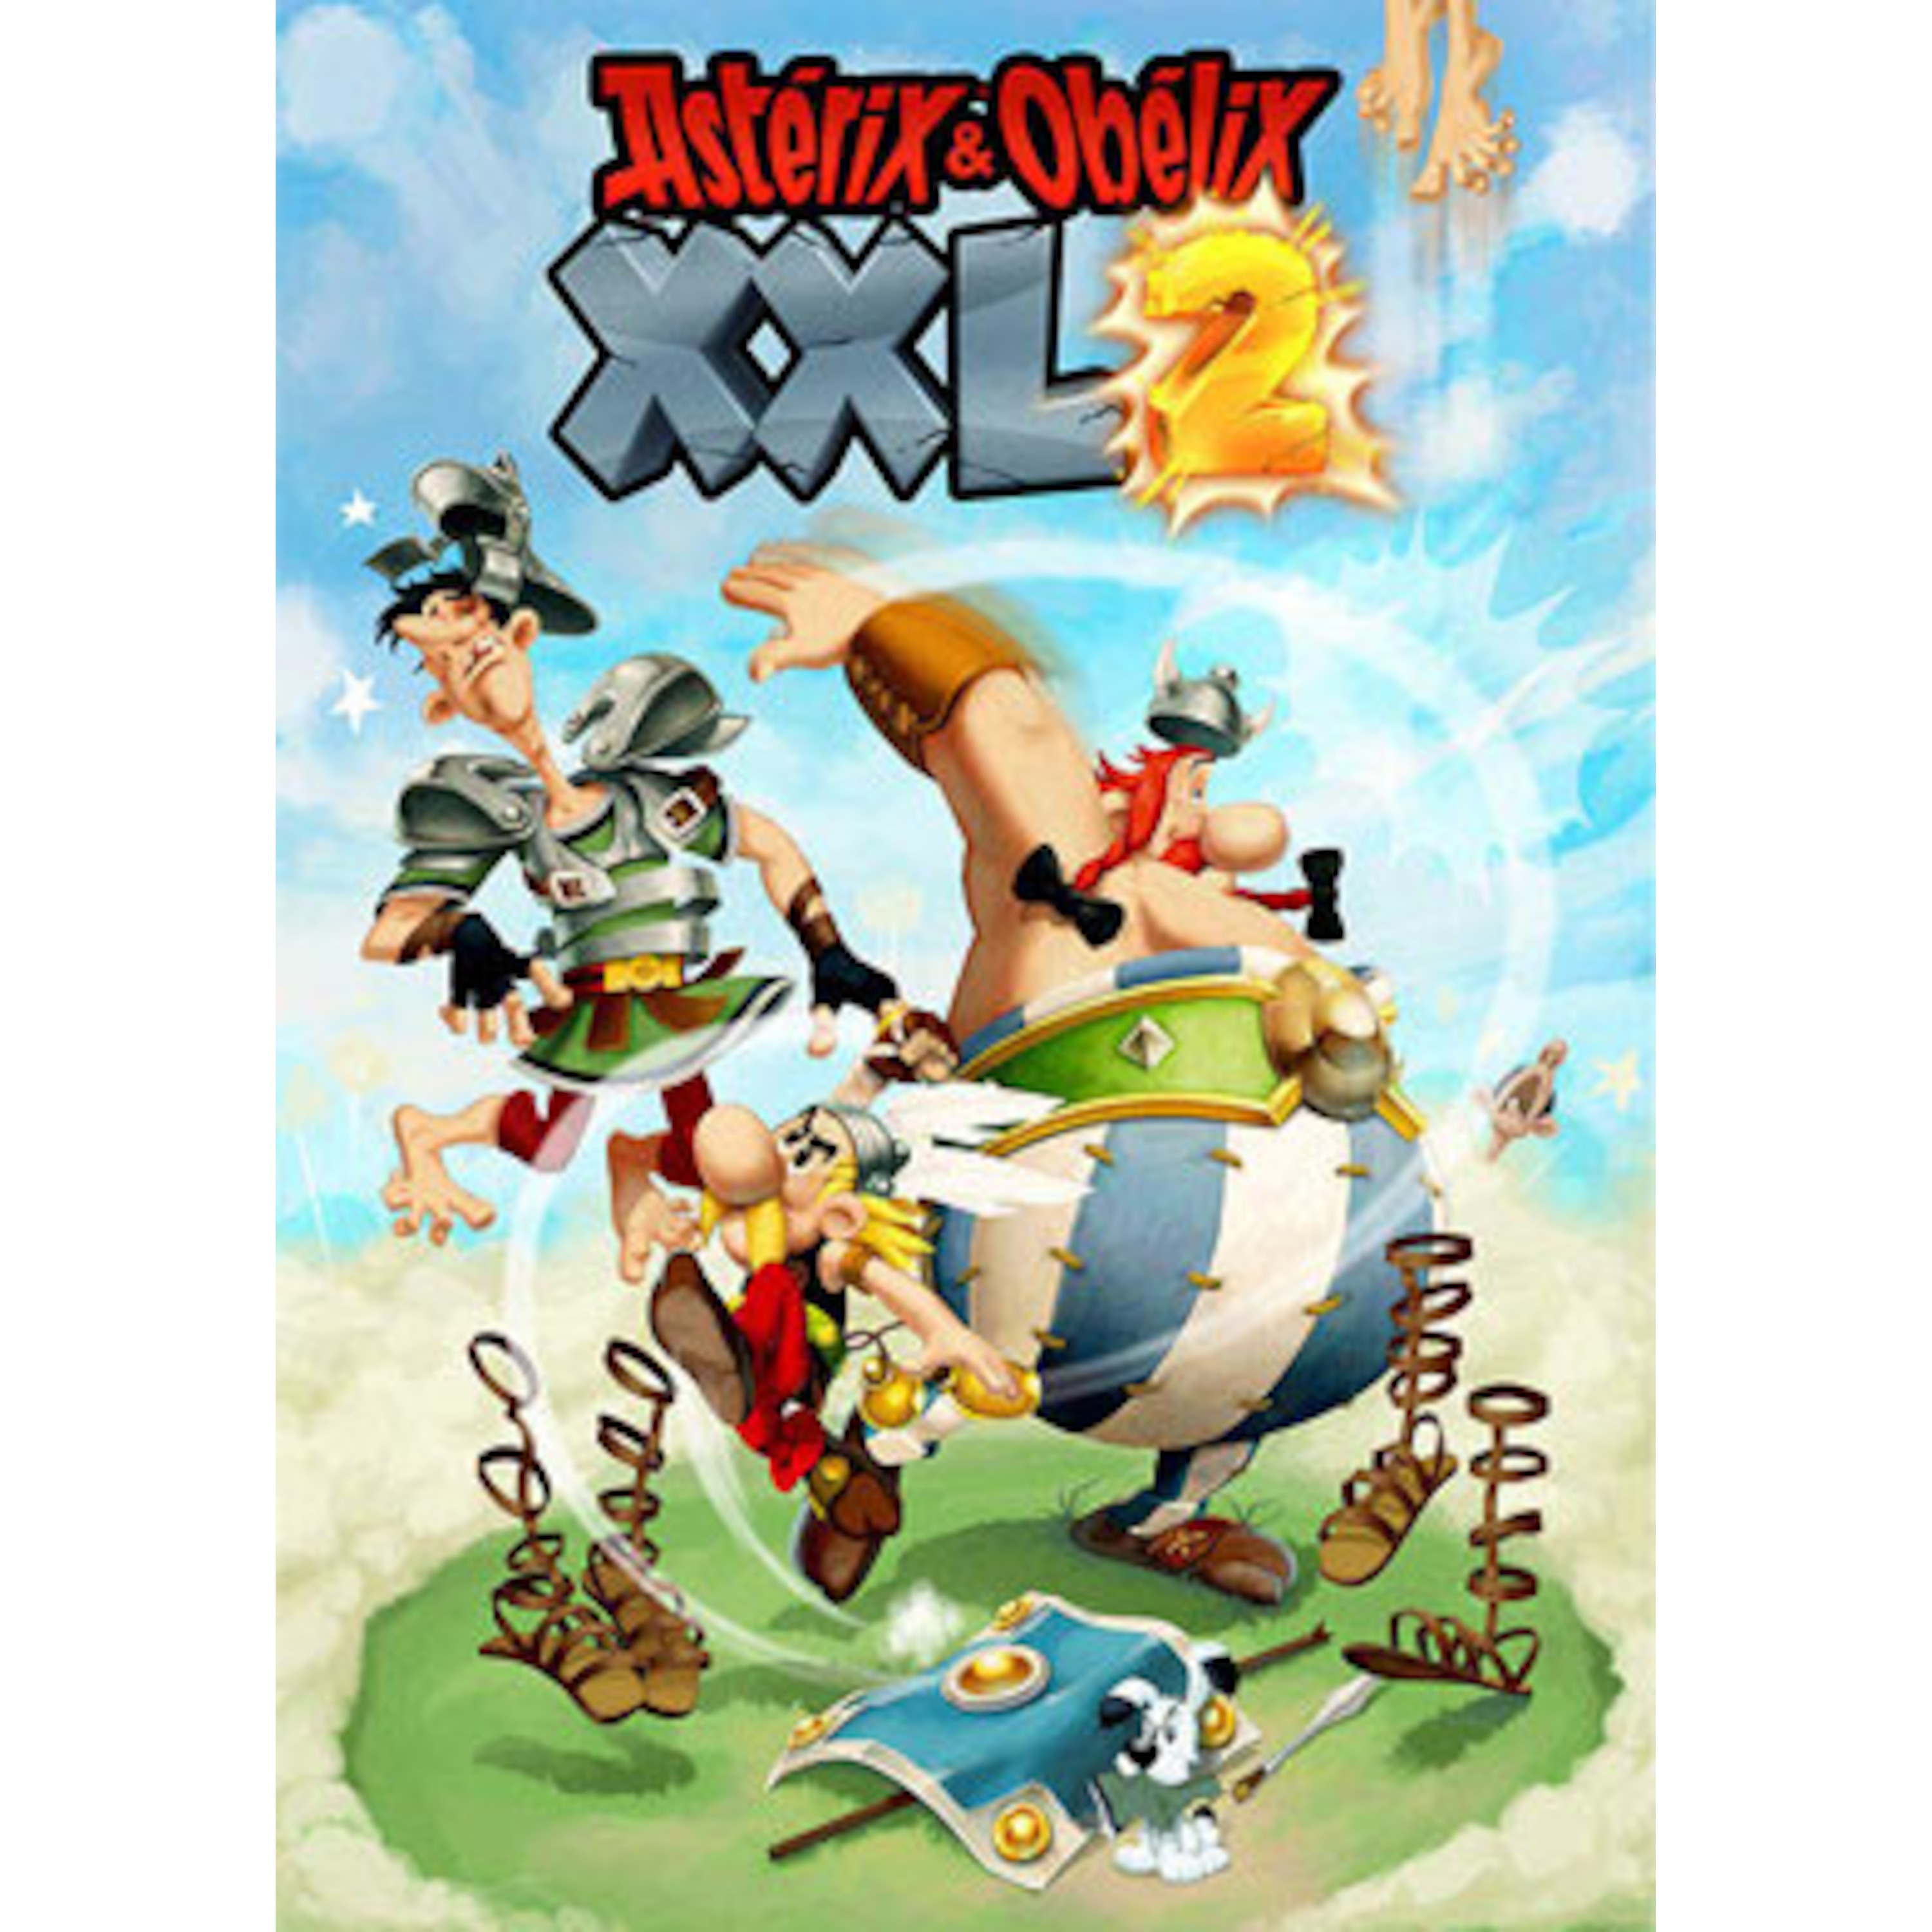 asterix-obelix-xxl-2-medion-online-shop